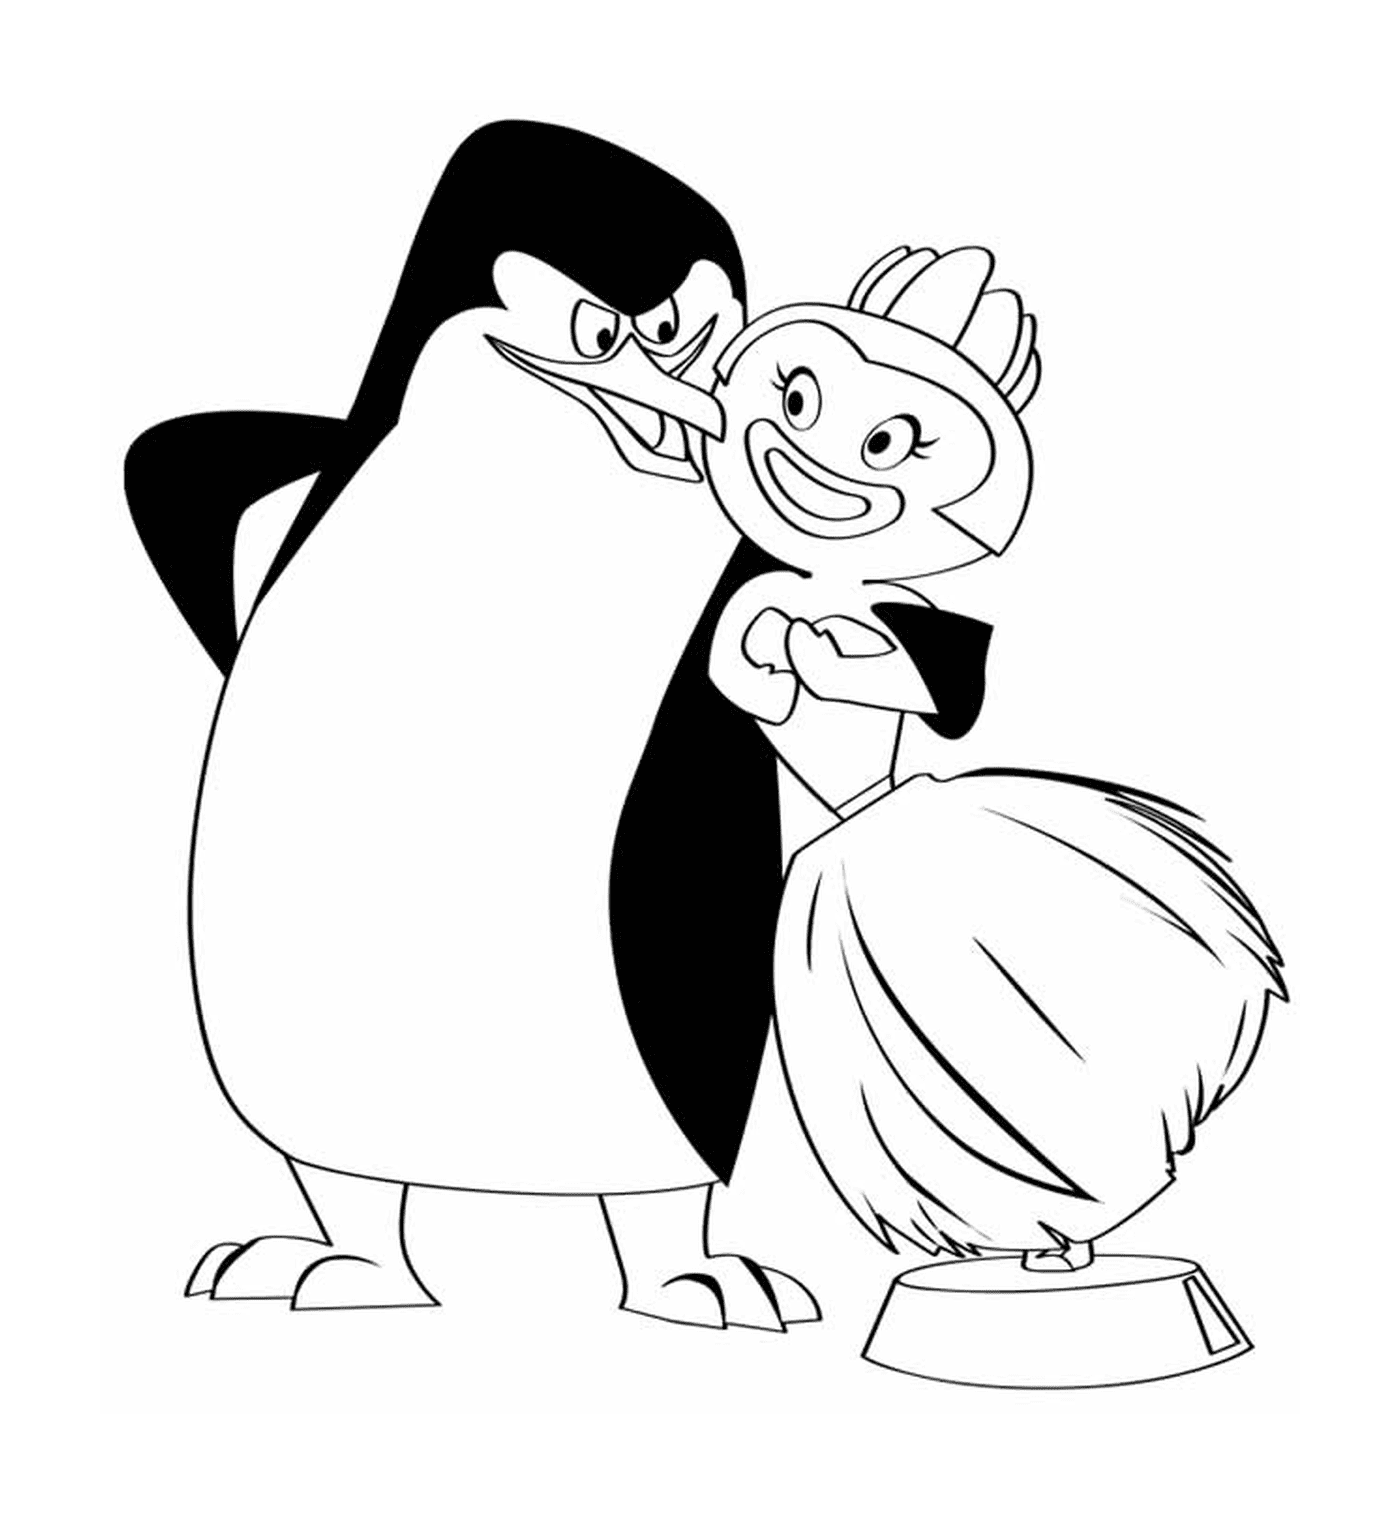  马达加斯加的企鹅图画 